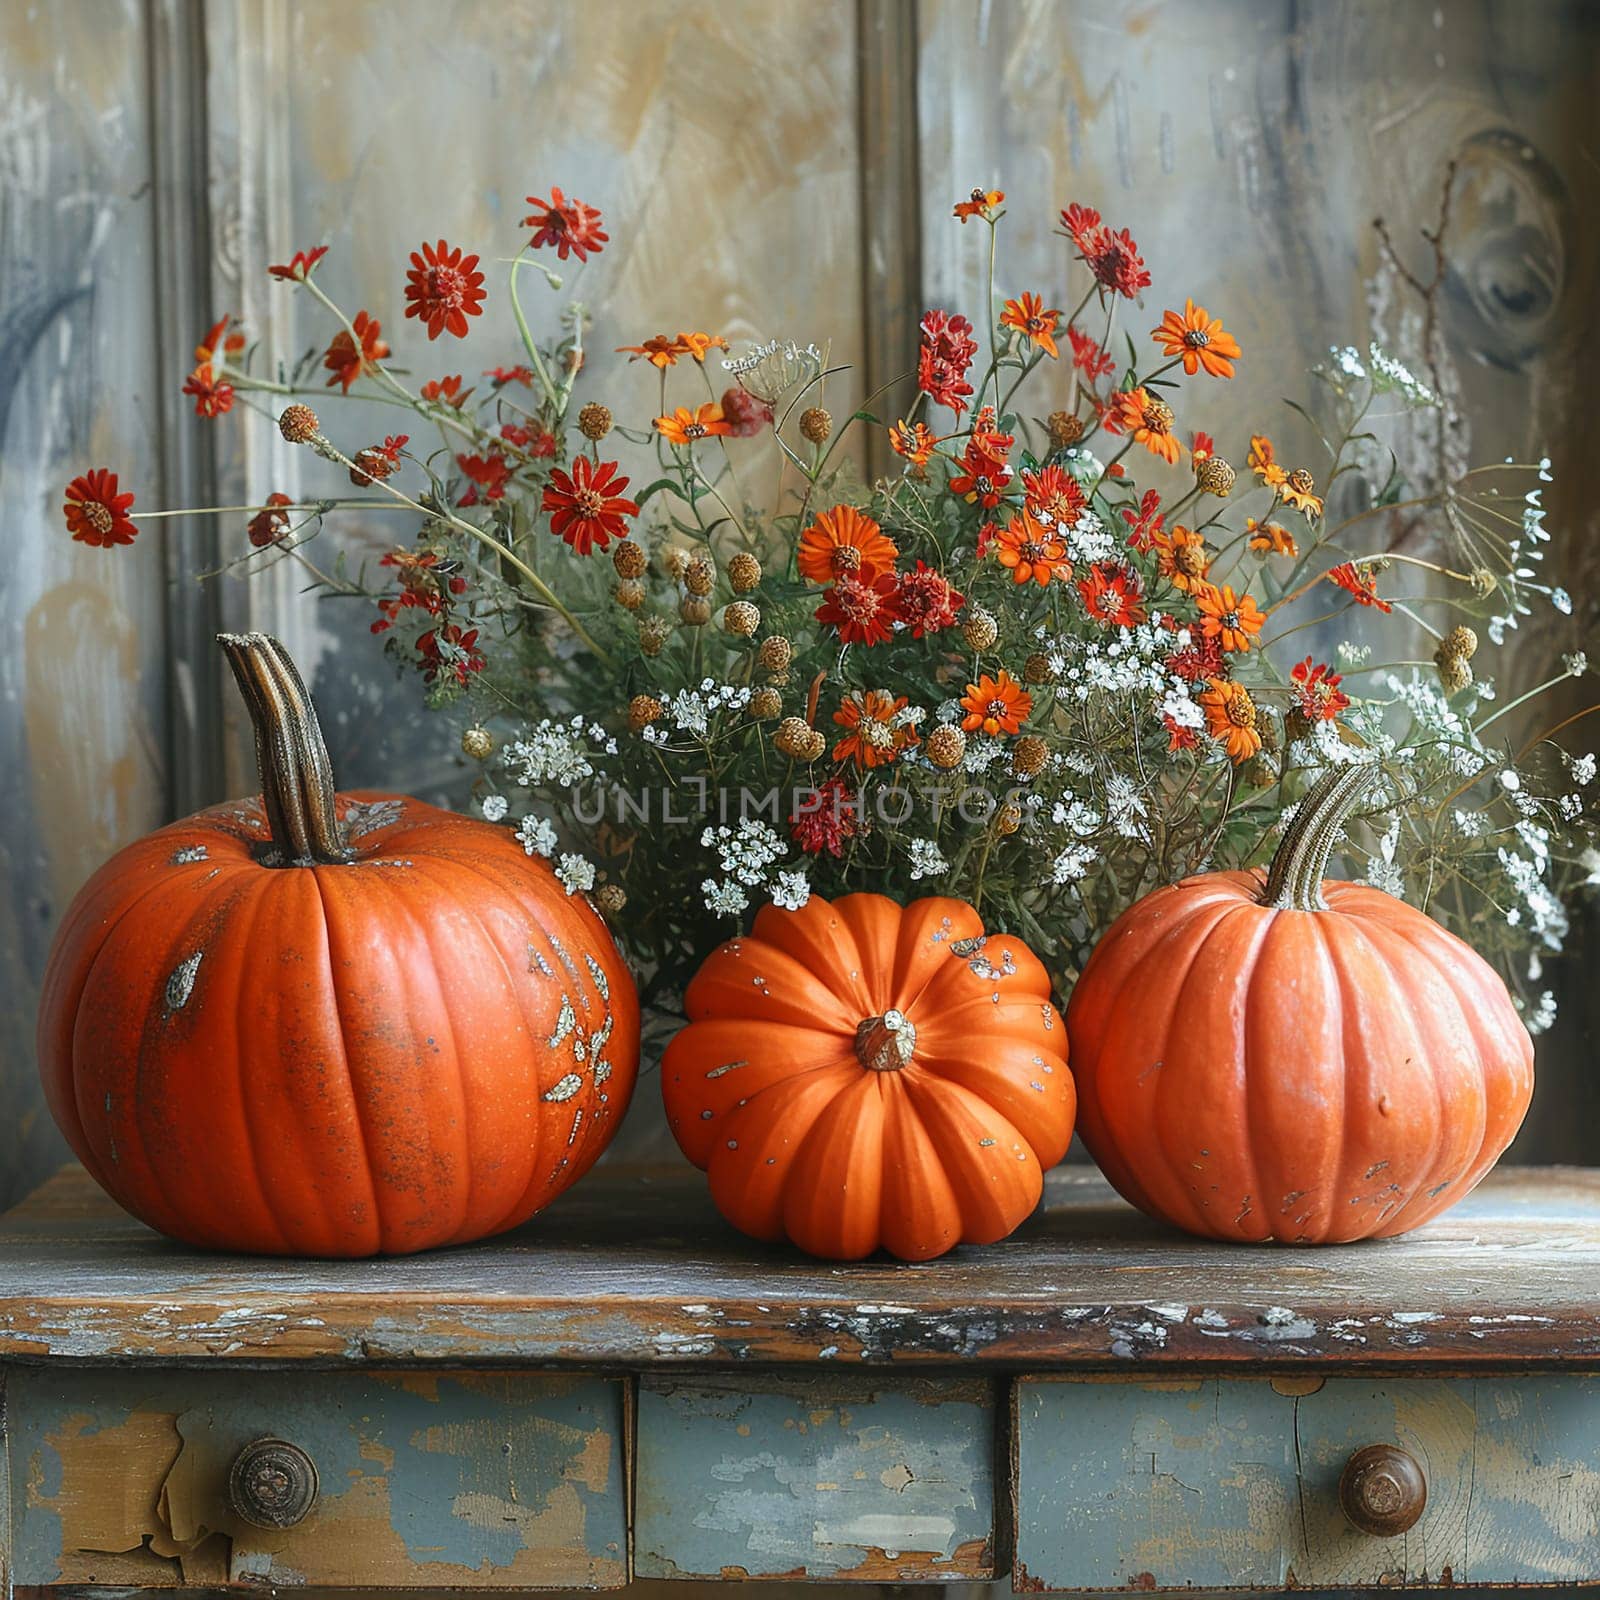 Autumn pumpkin arrangement on a rustic wooden table, evoking fall harvest.